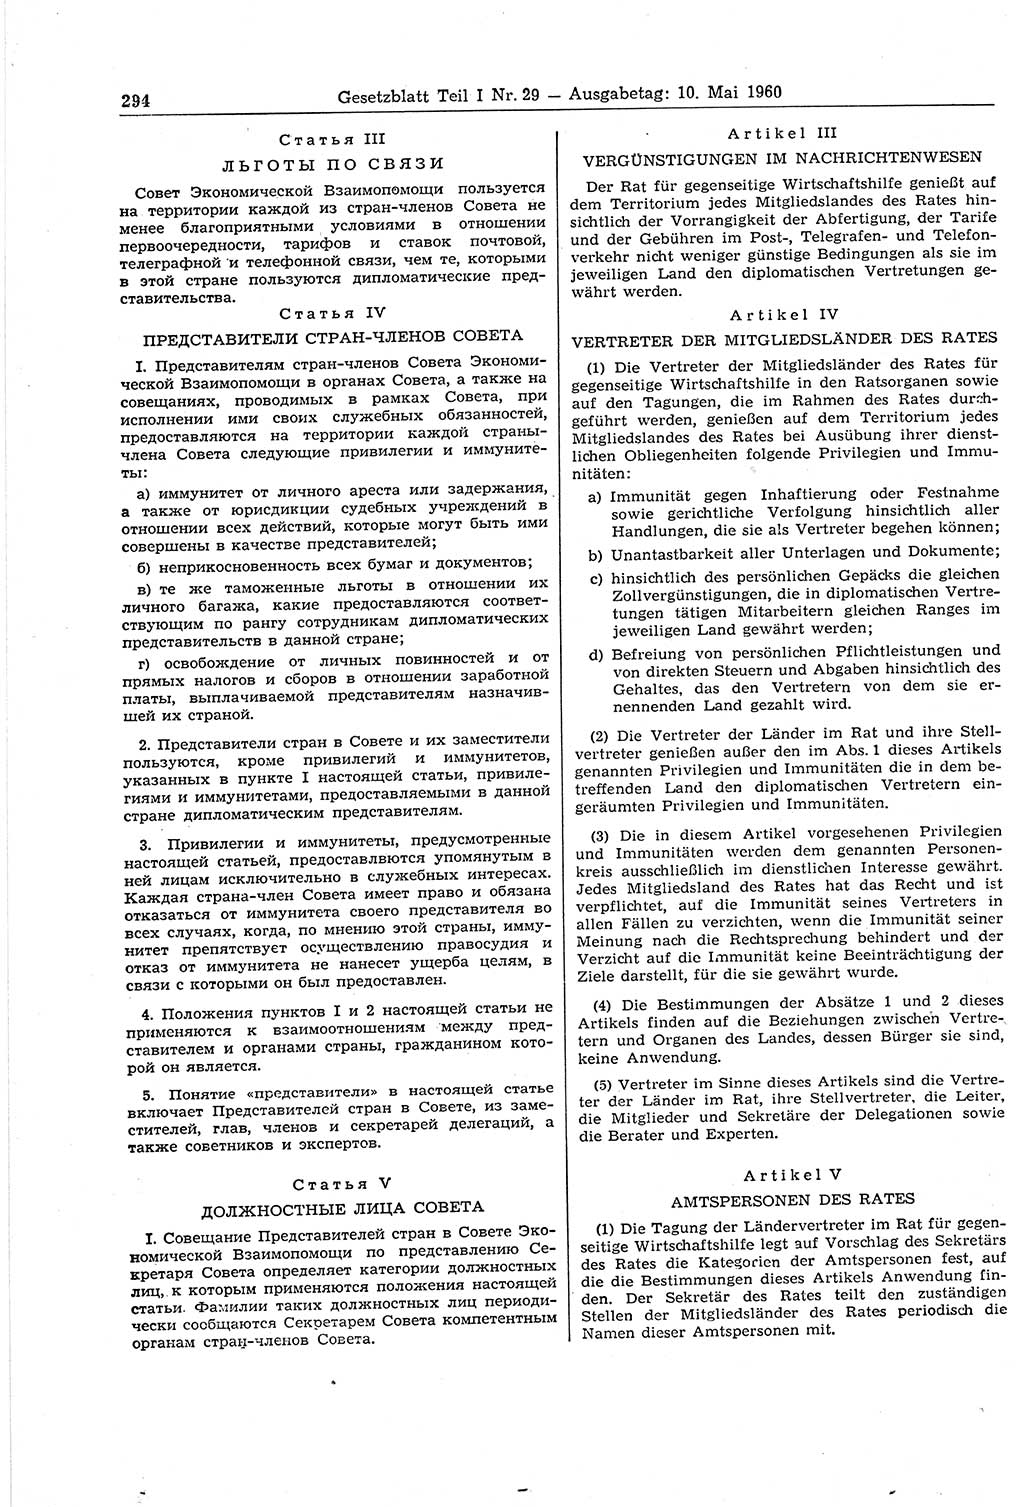 Gesetzblatt (GBl.) der Deutschen Demokratischen Republik (DDR) Teil Ⅰ 1960, Seite 294 (GBl. DDR Ⅰ 1960, S. 294)